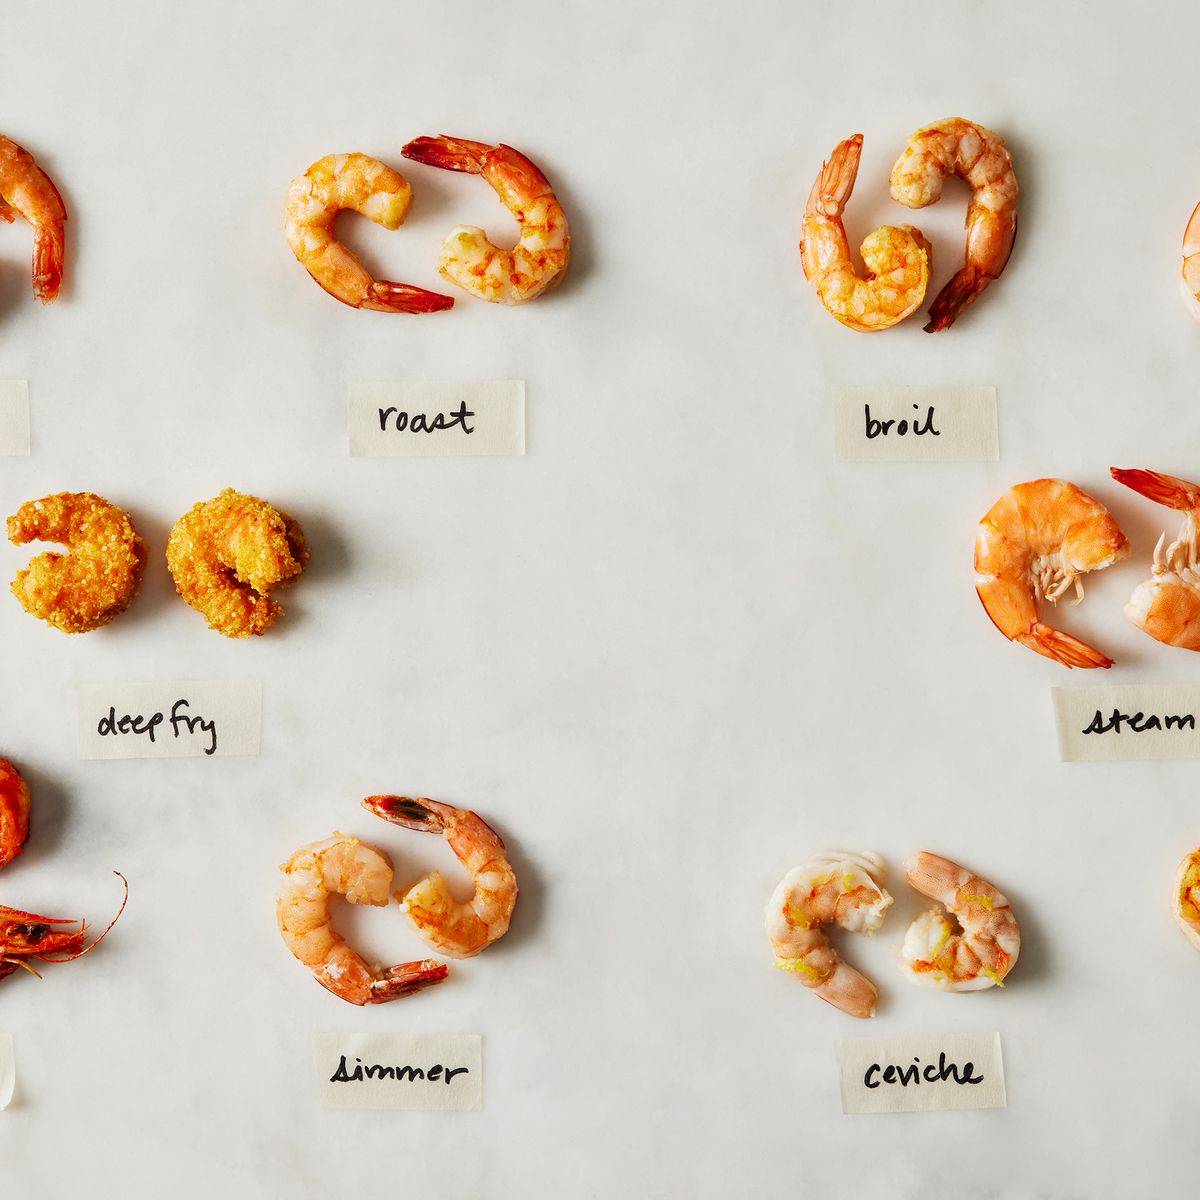 How to make shrimp tender